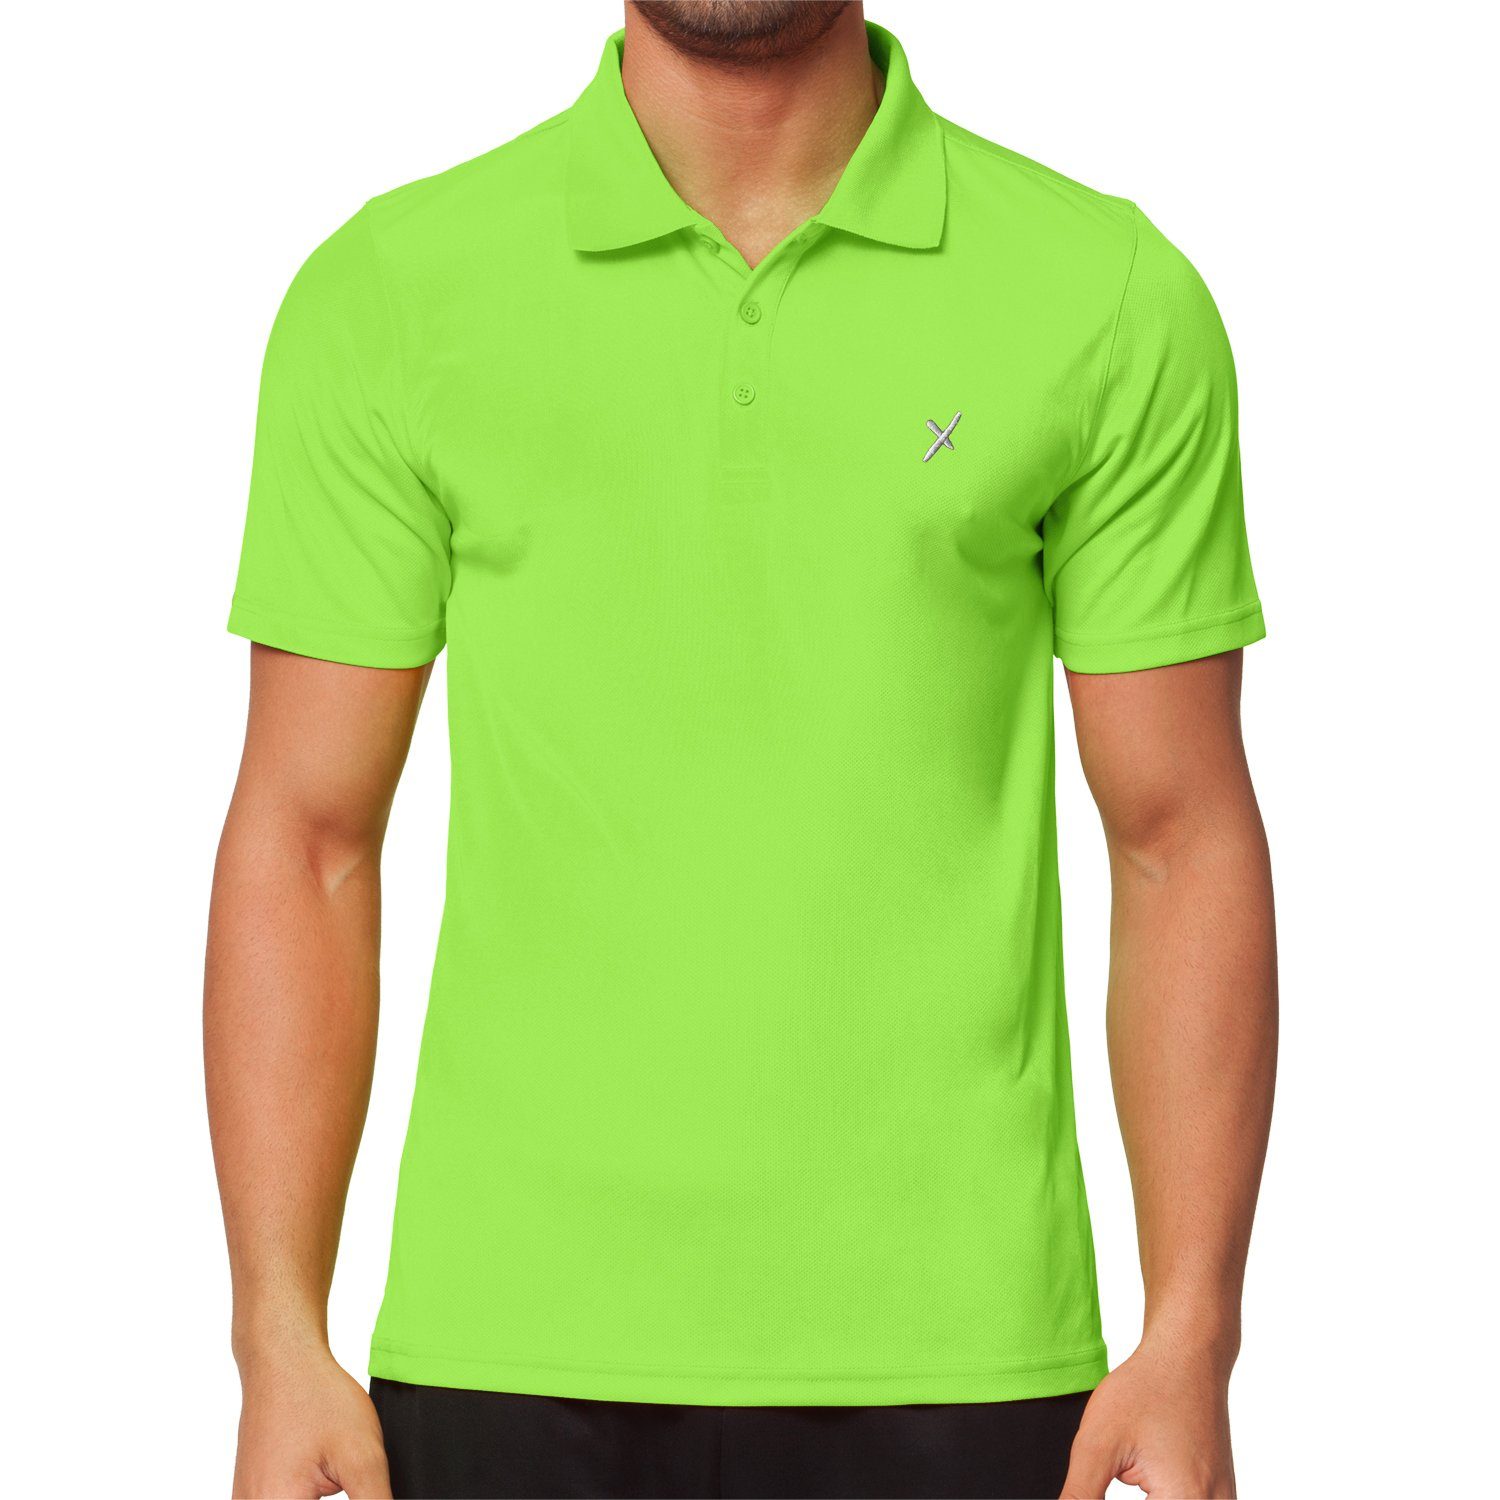 CFLEX Trainingsshirt Herren Sport Shirt Fitness Polo-Shirt Sportswear Collection Grün